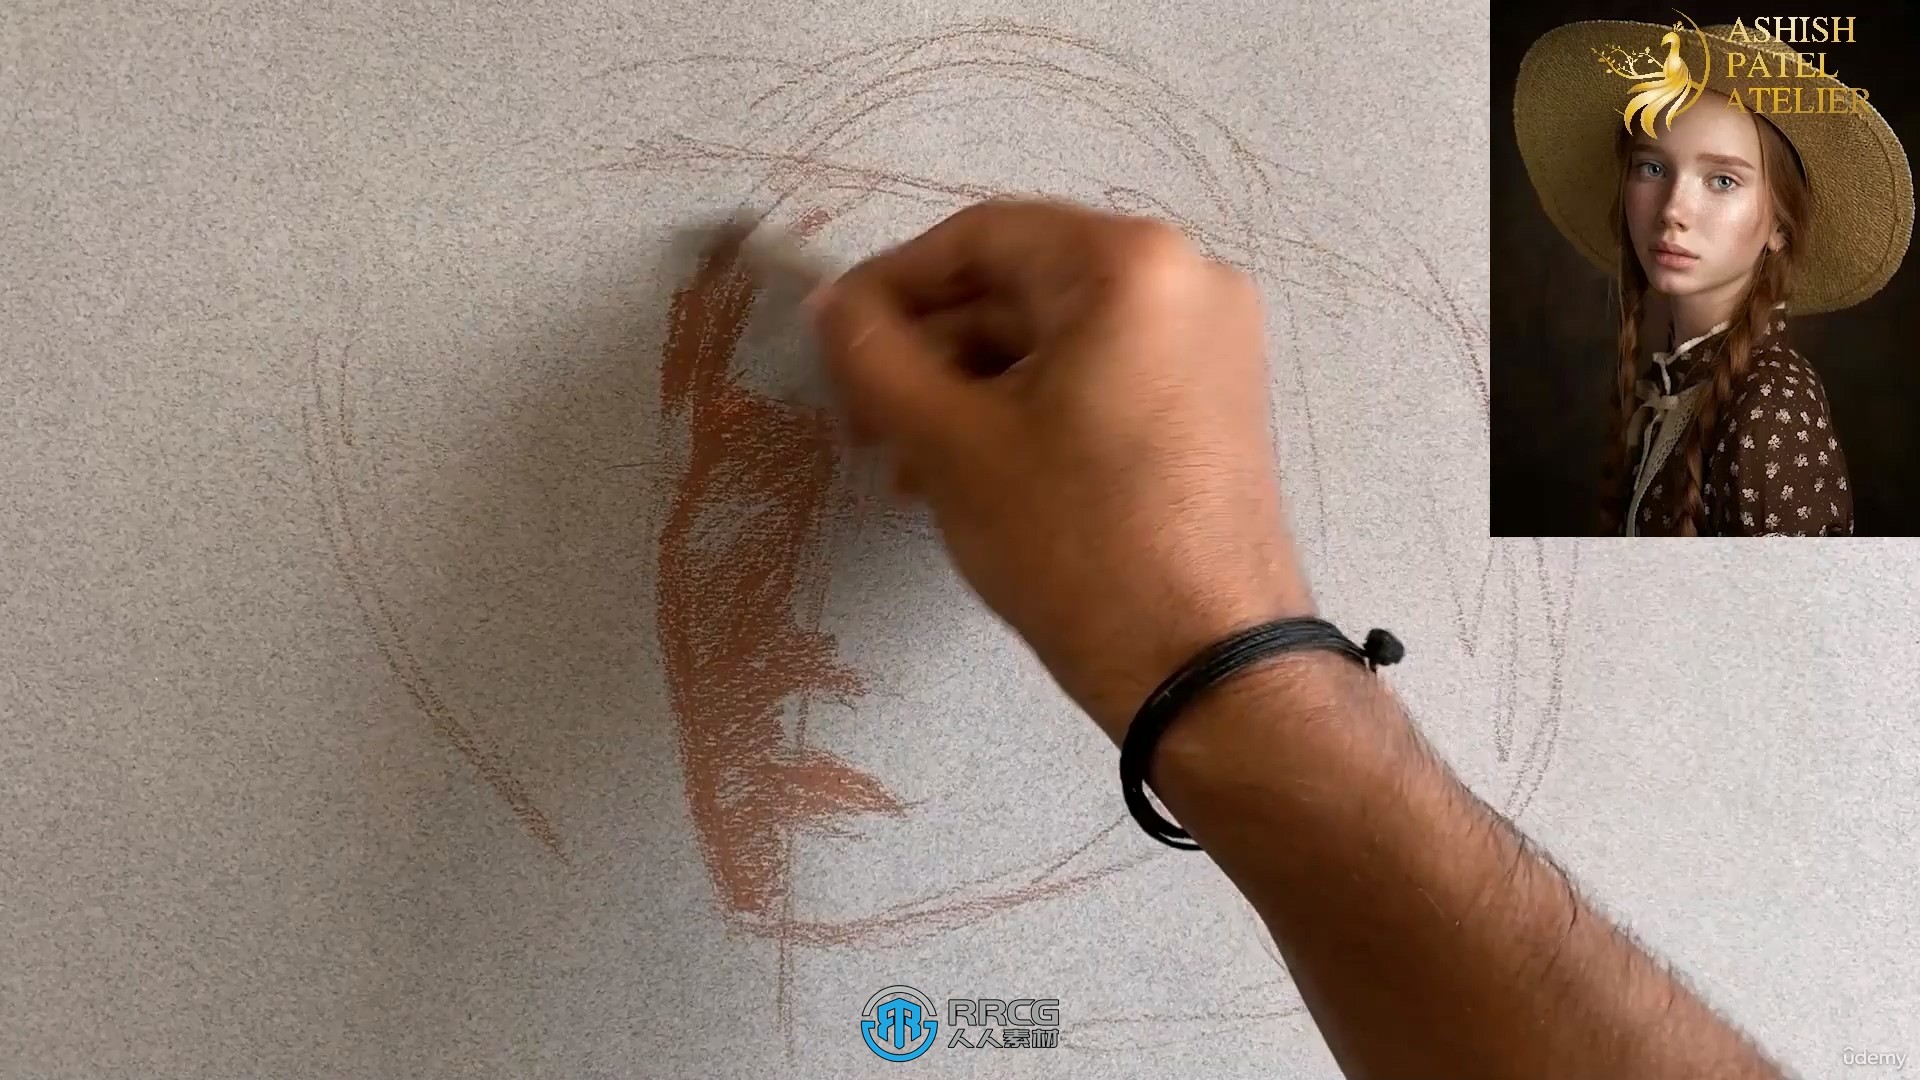 彩色粉笔铅笔绘制人物肖像系列视频教程第一季